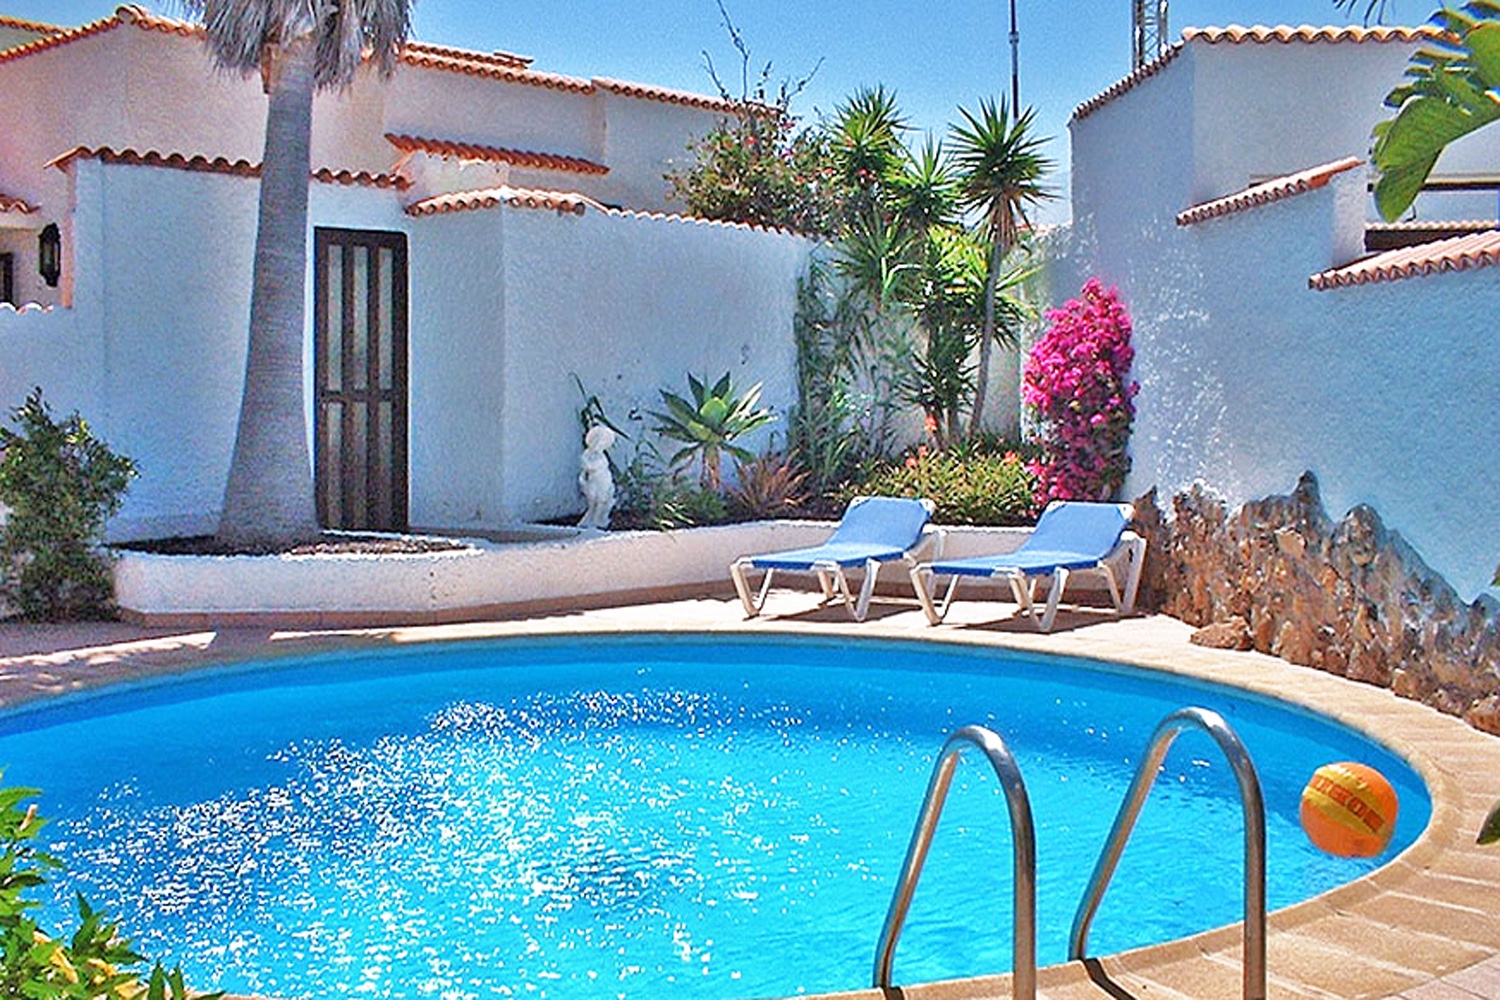 Huis te huur in het zuiden van Tenerife met privé zwembad vlakbij het strand van Porís de Abona.